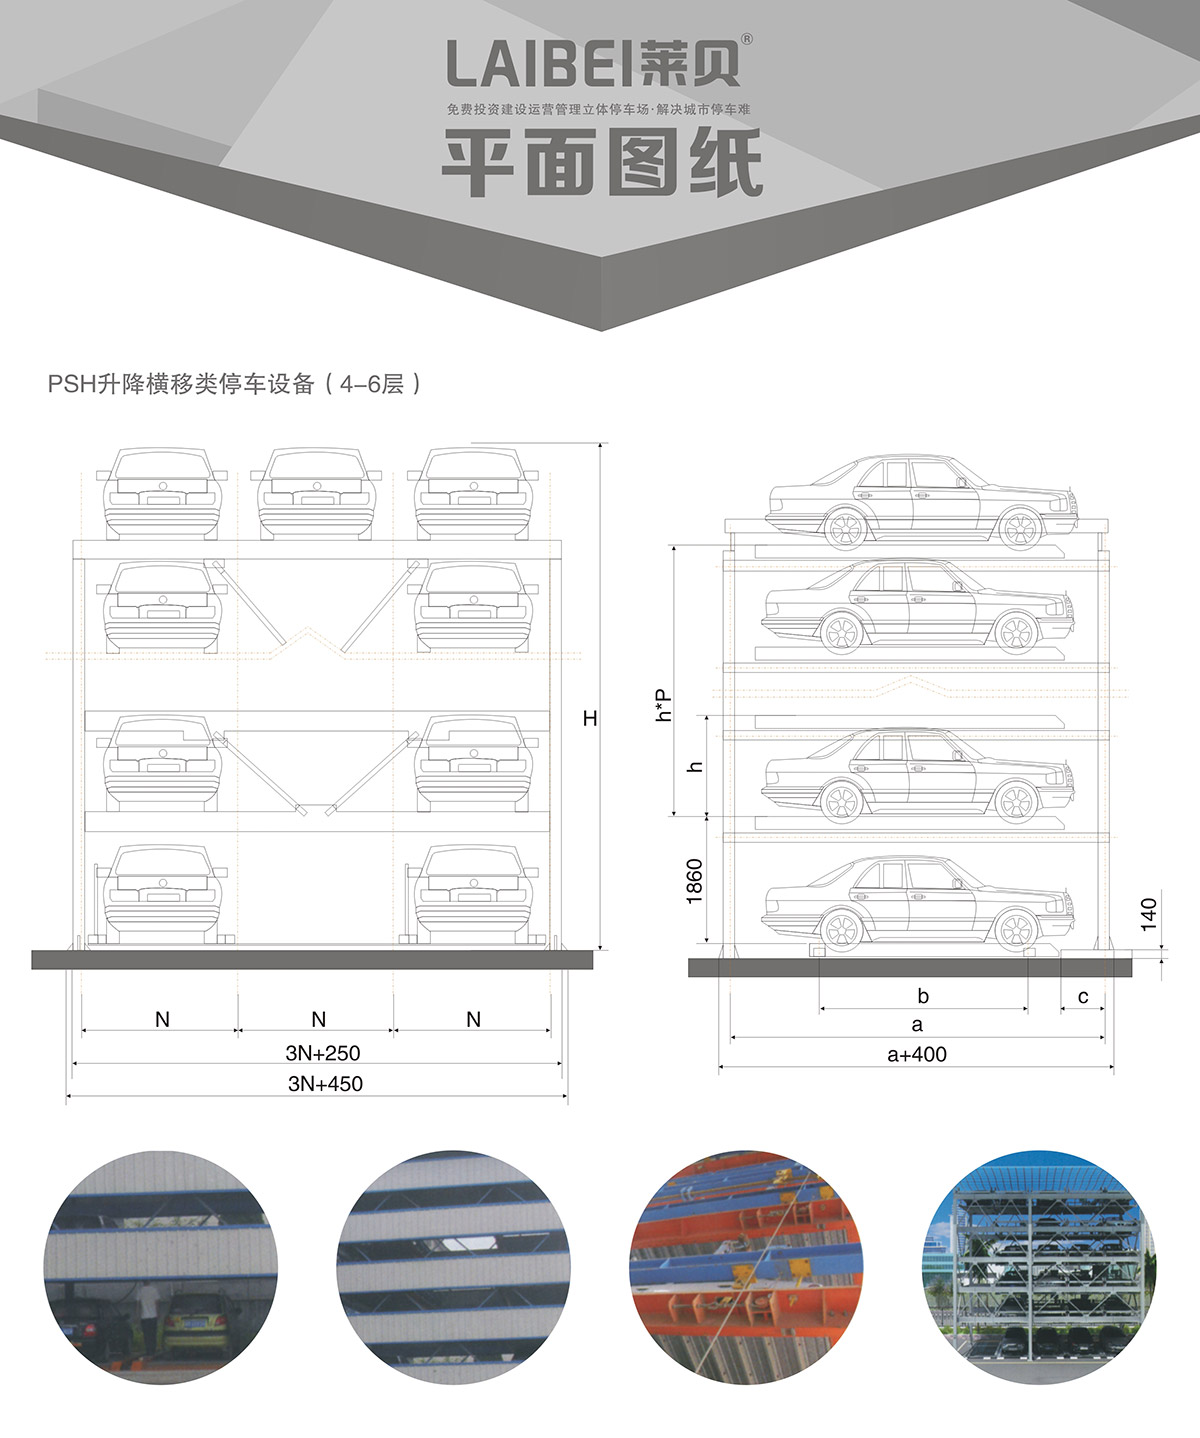 自动车库四至六层PSH4-6升降横移立体车库设备平面图纸.jpg